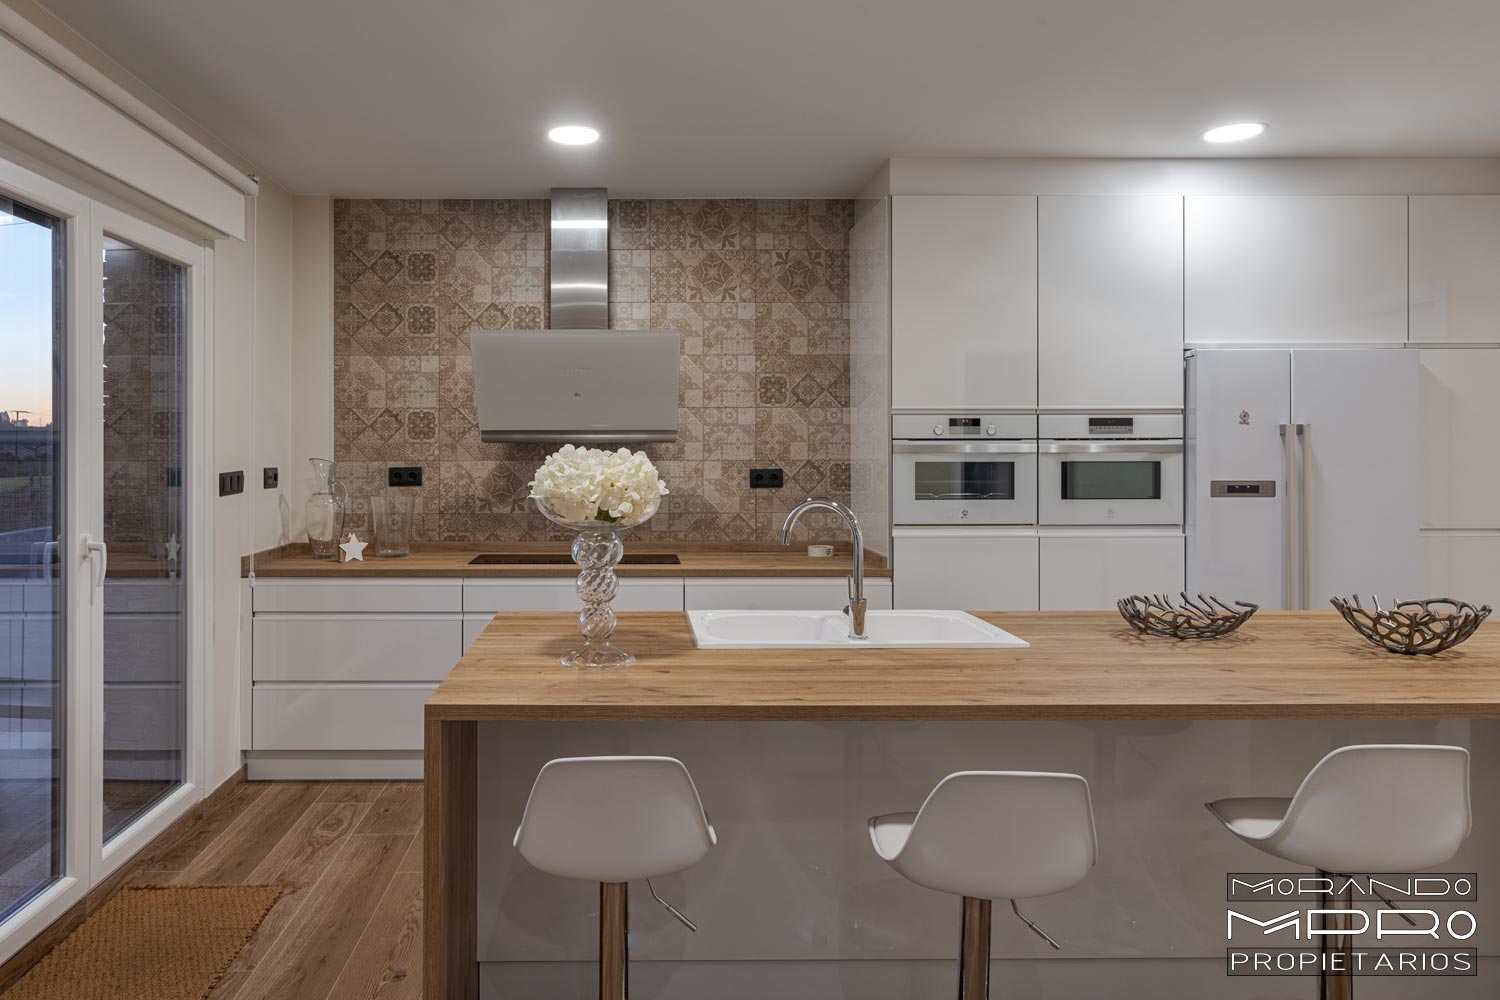 Cocina moderna con muebles en blanco y electrodomésticos a juego con encimera de madera y taburetes blancos.